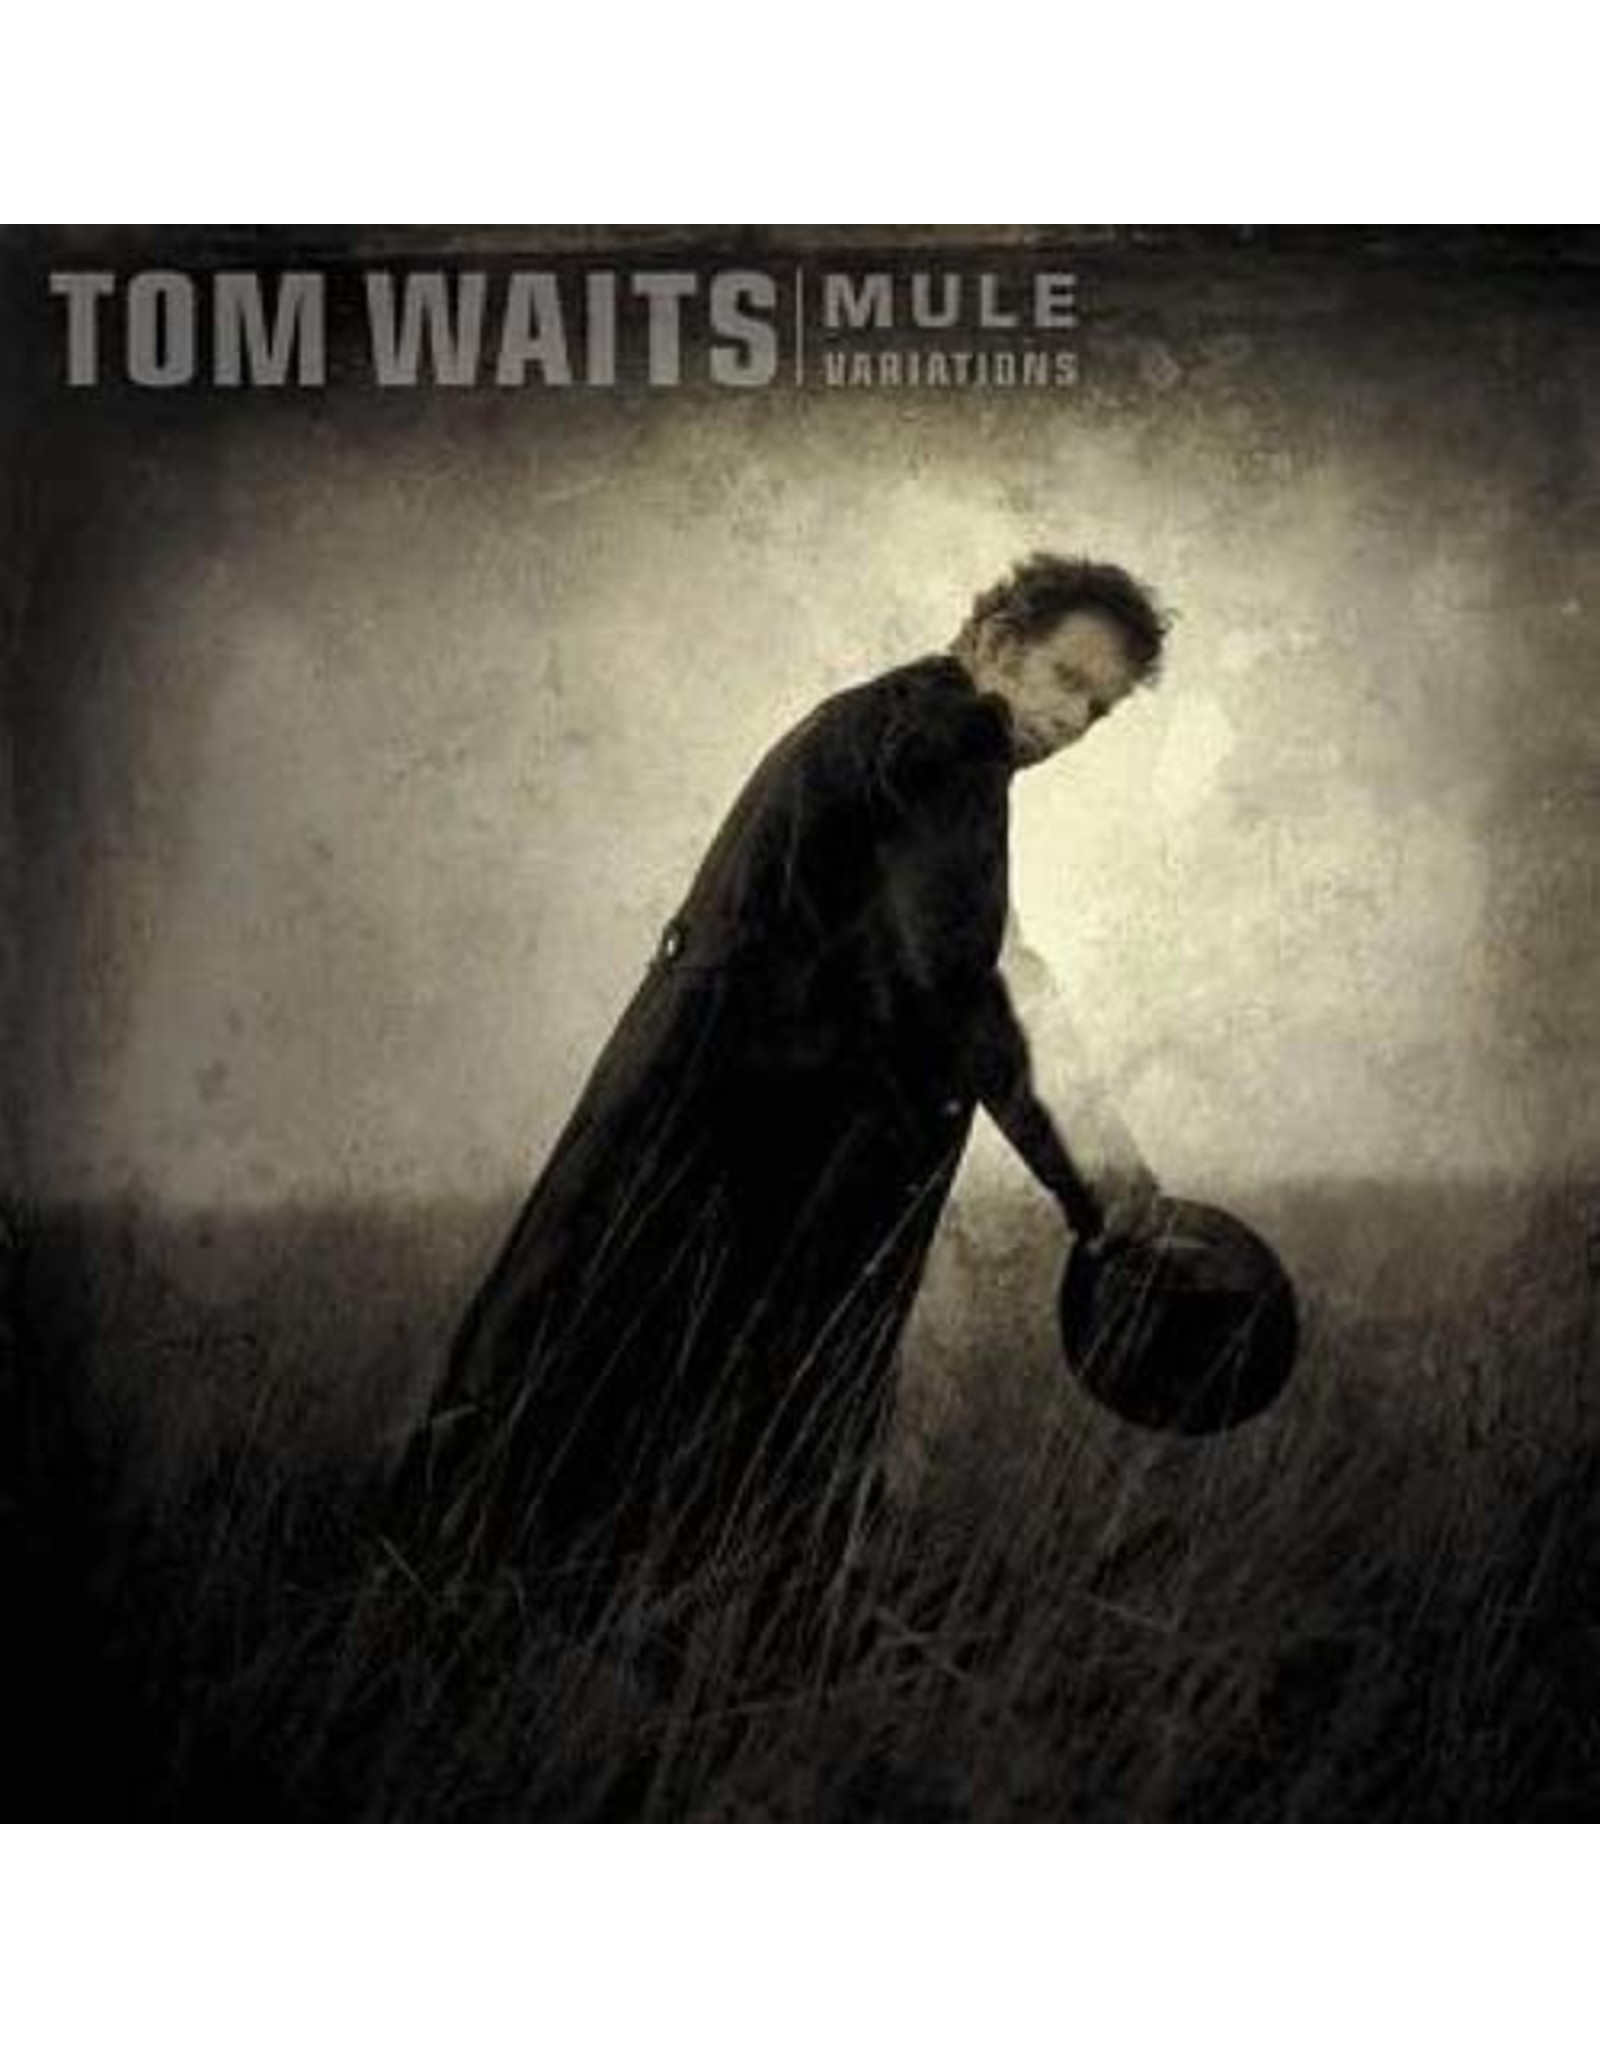 New Vinyl Tom Waits - Mule Variations 2LP